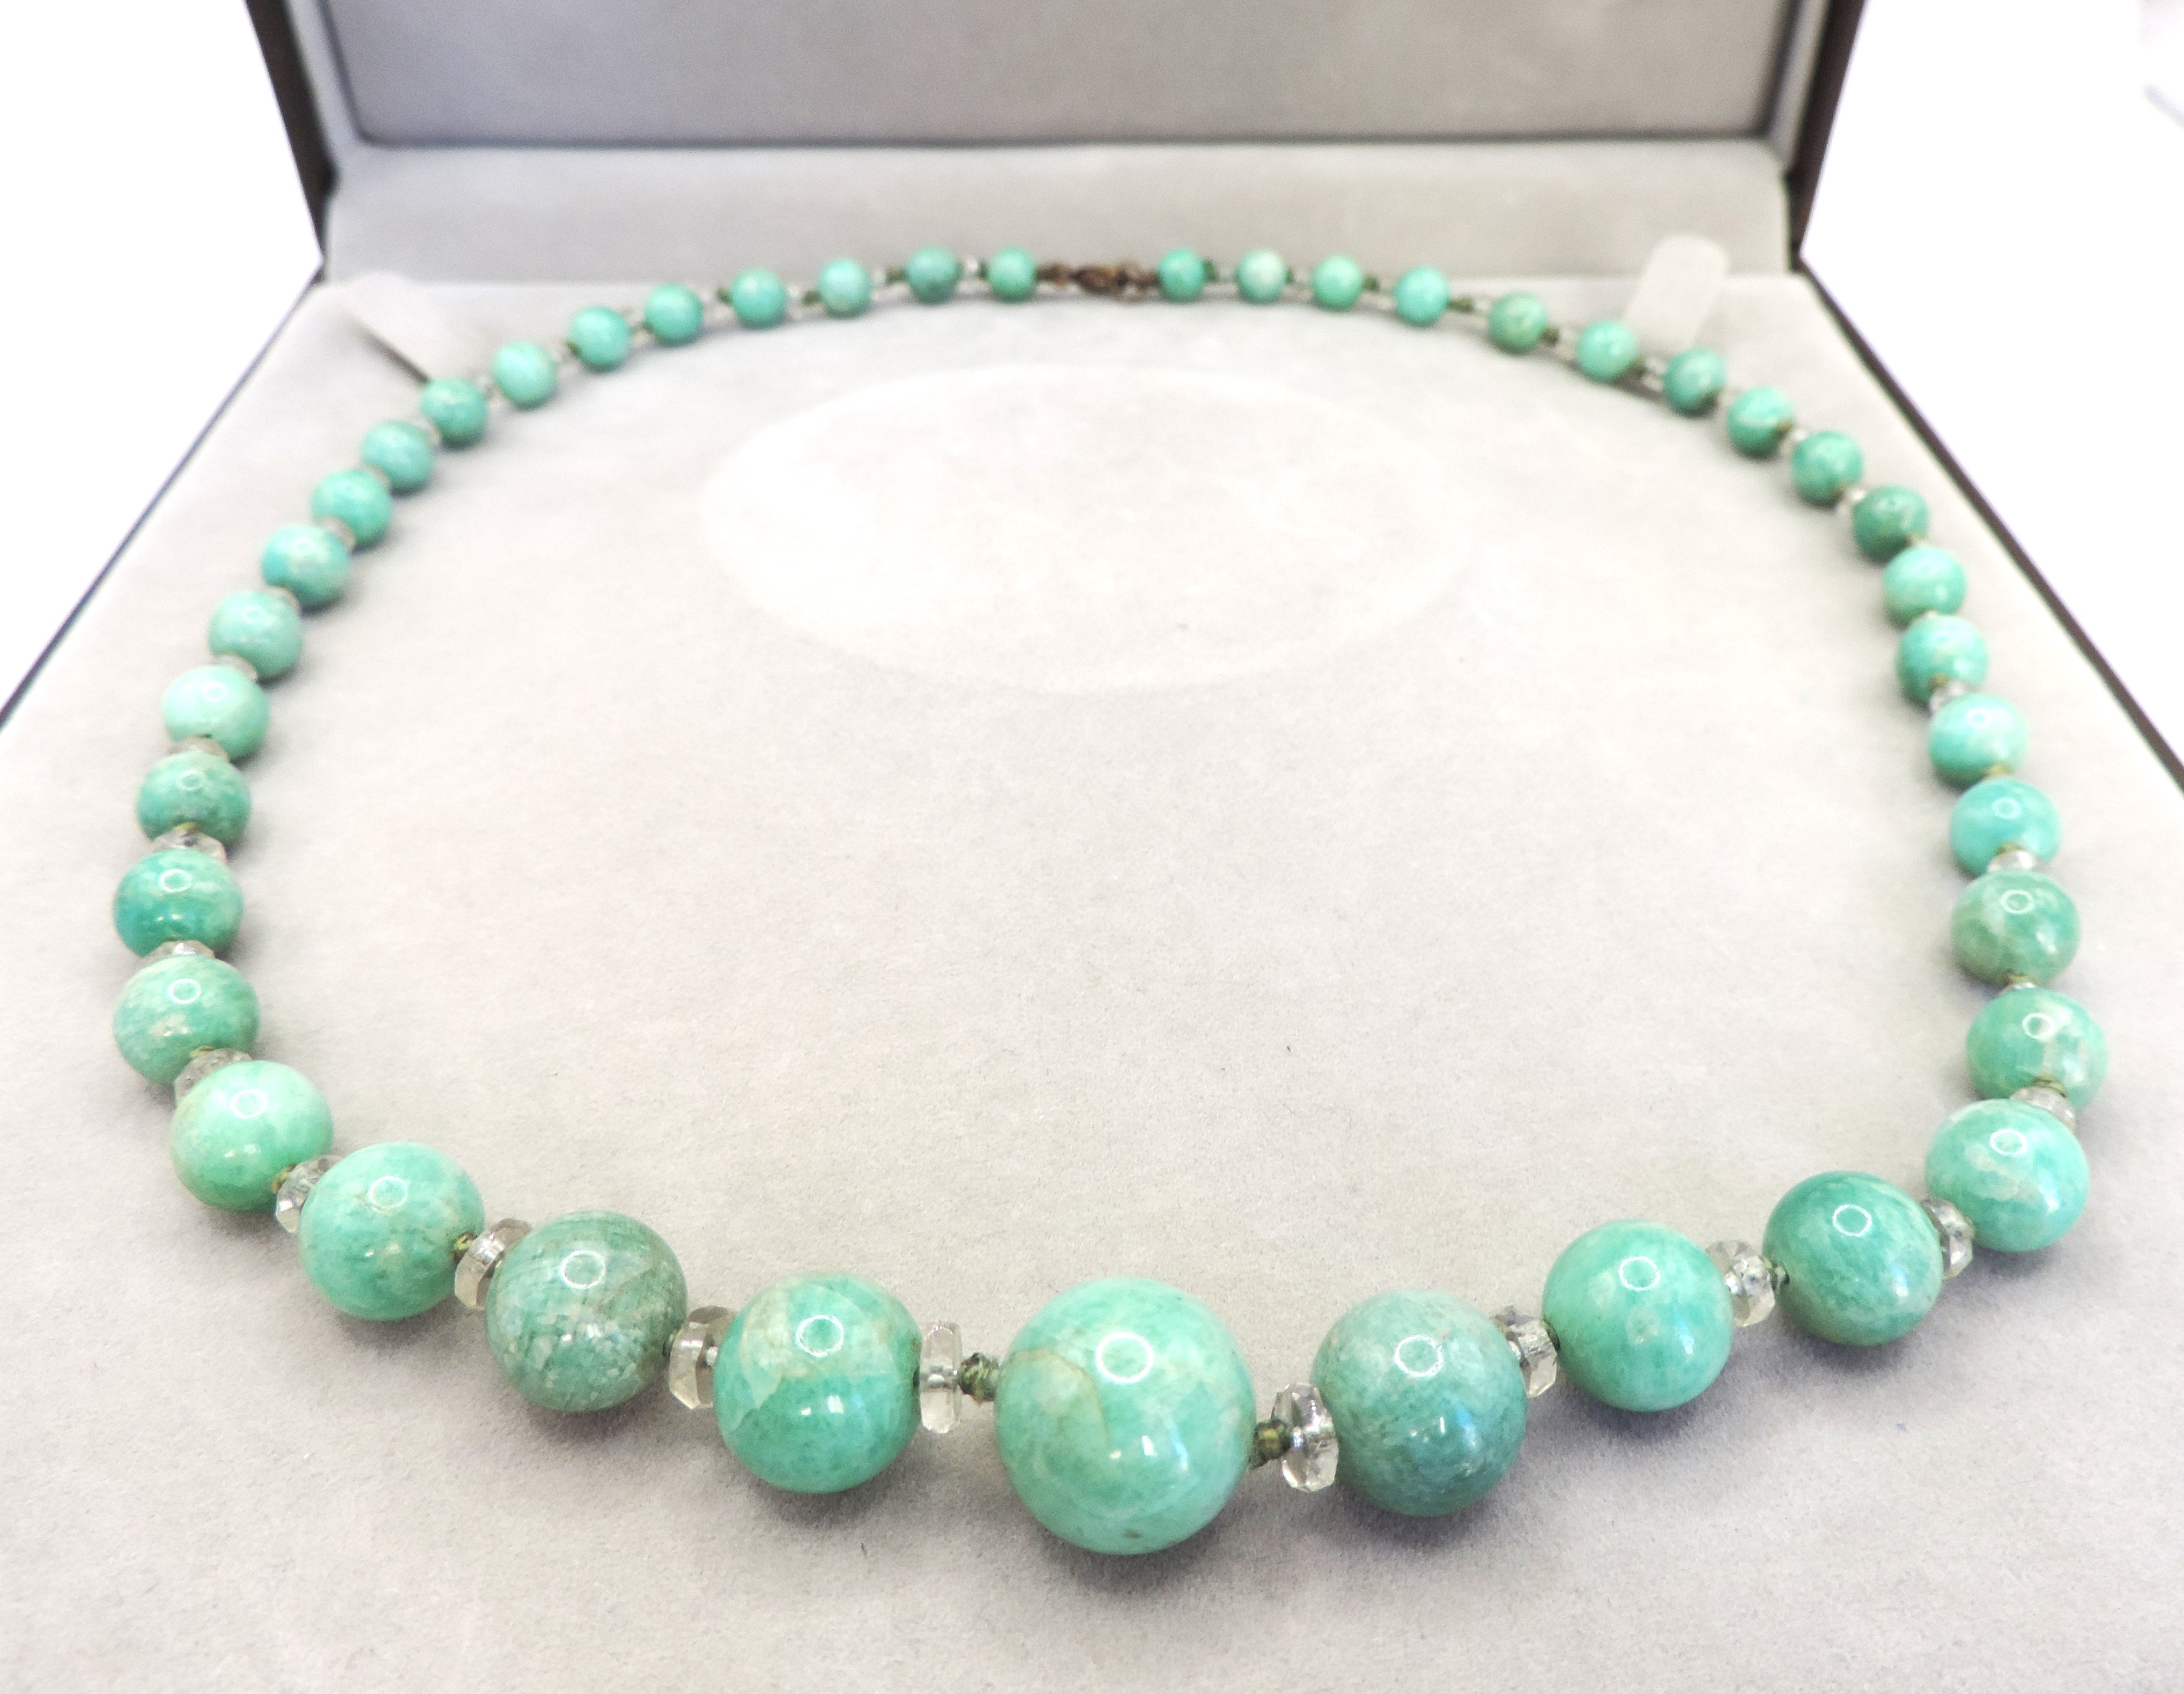 Vintage Graduated Amazonite Gemstone Bead Necklace - Image 2 of 4